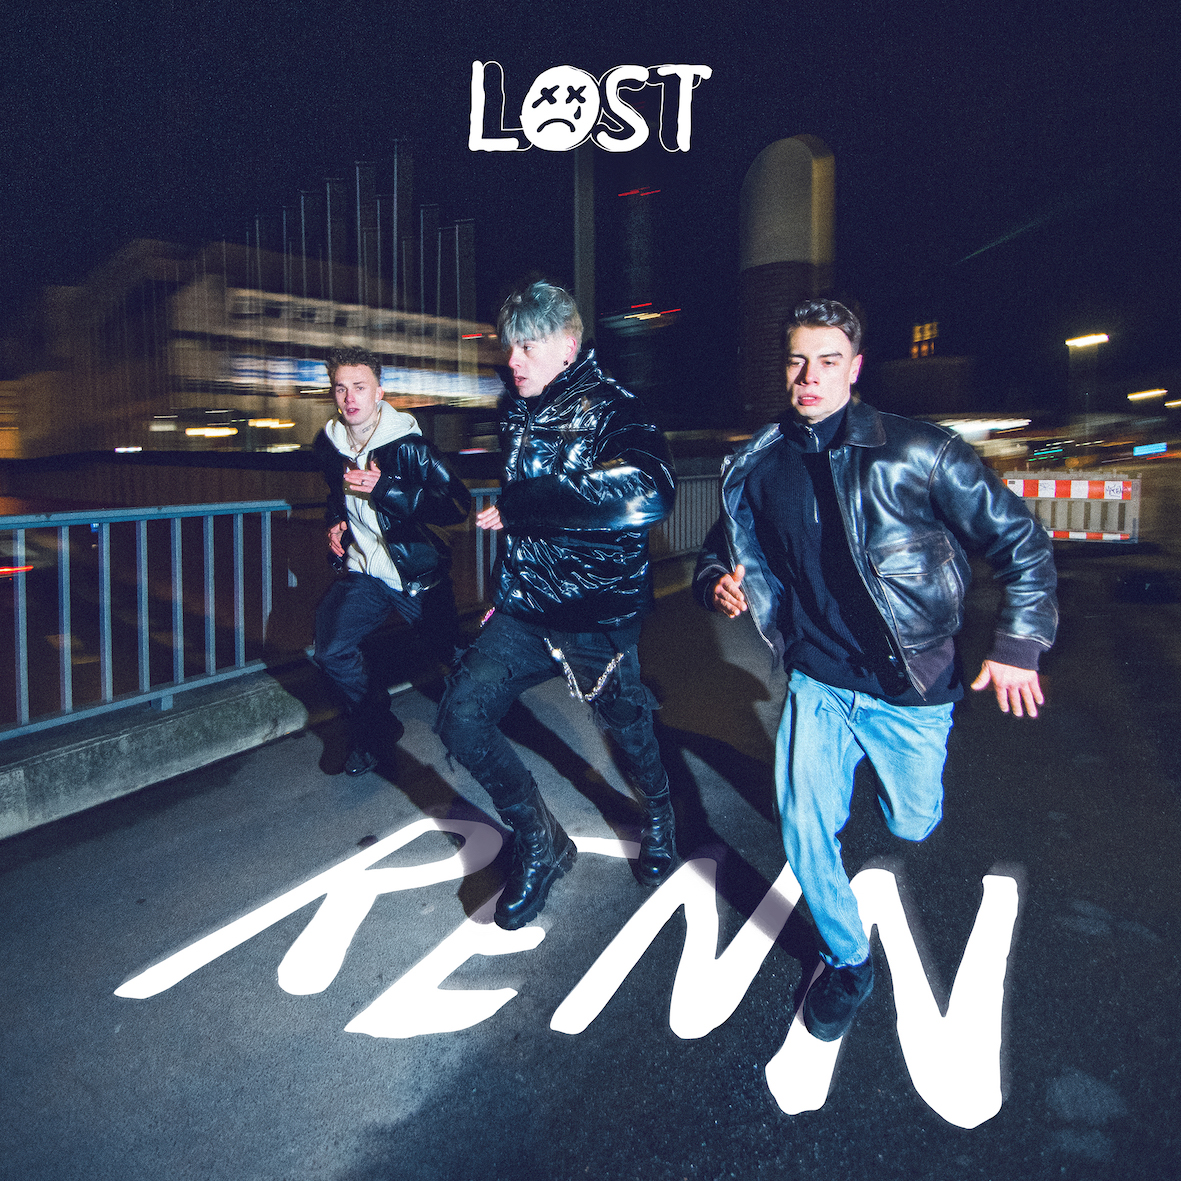 Lost "Renn"